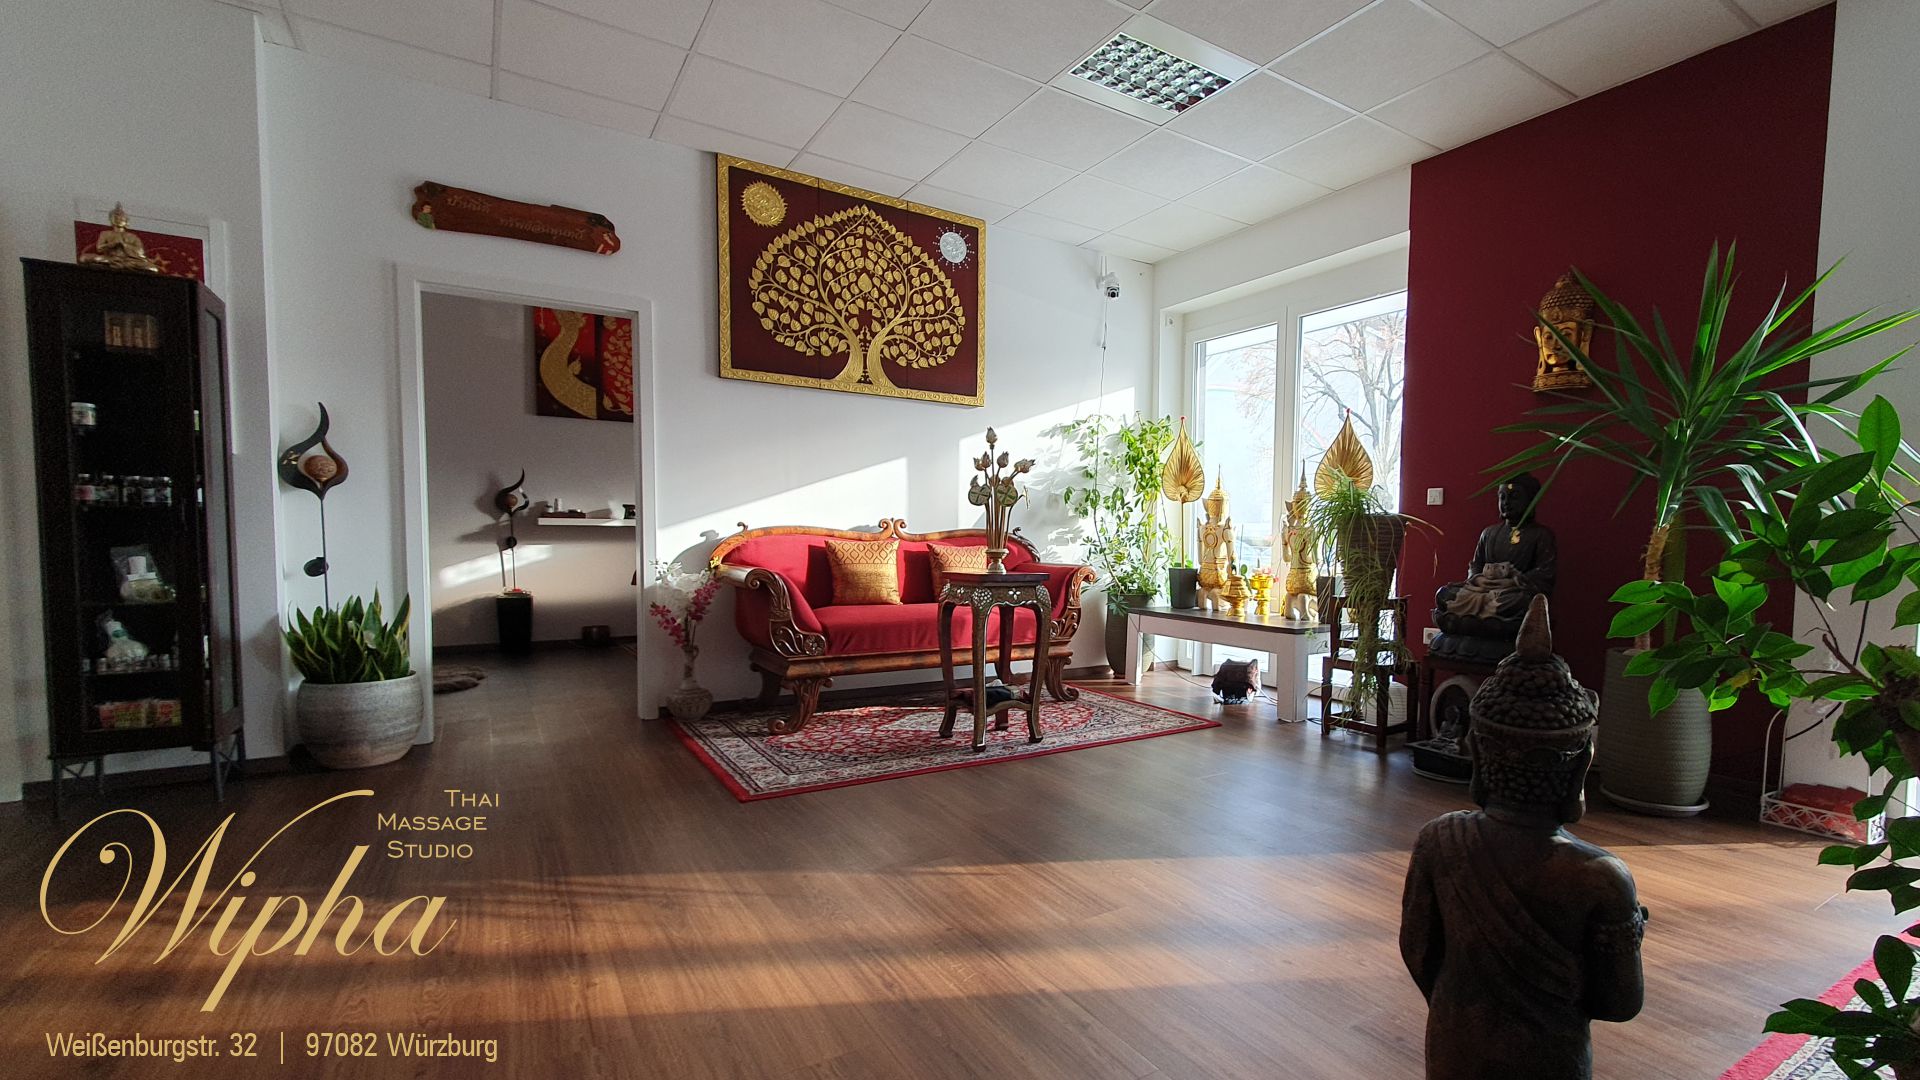 Foto Wipha Thai Massage Studio Würzburg Empfang